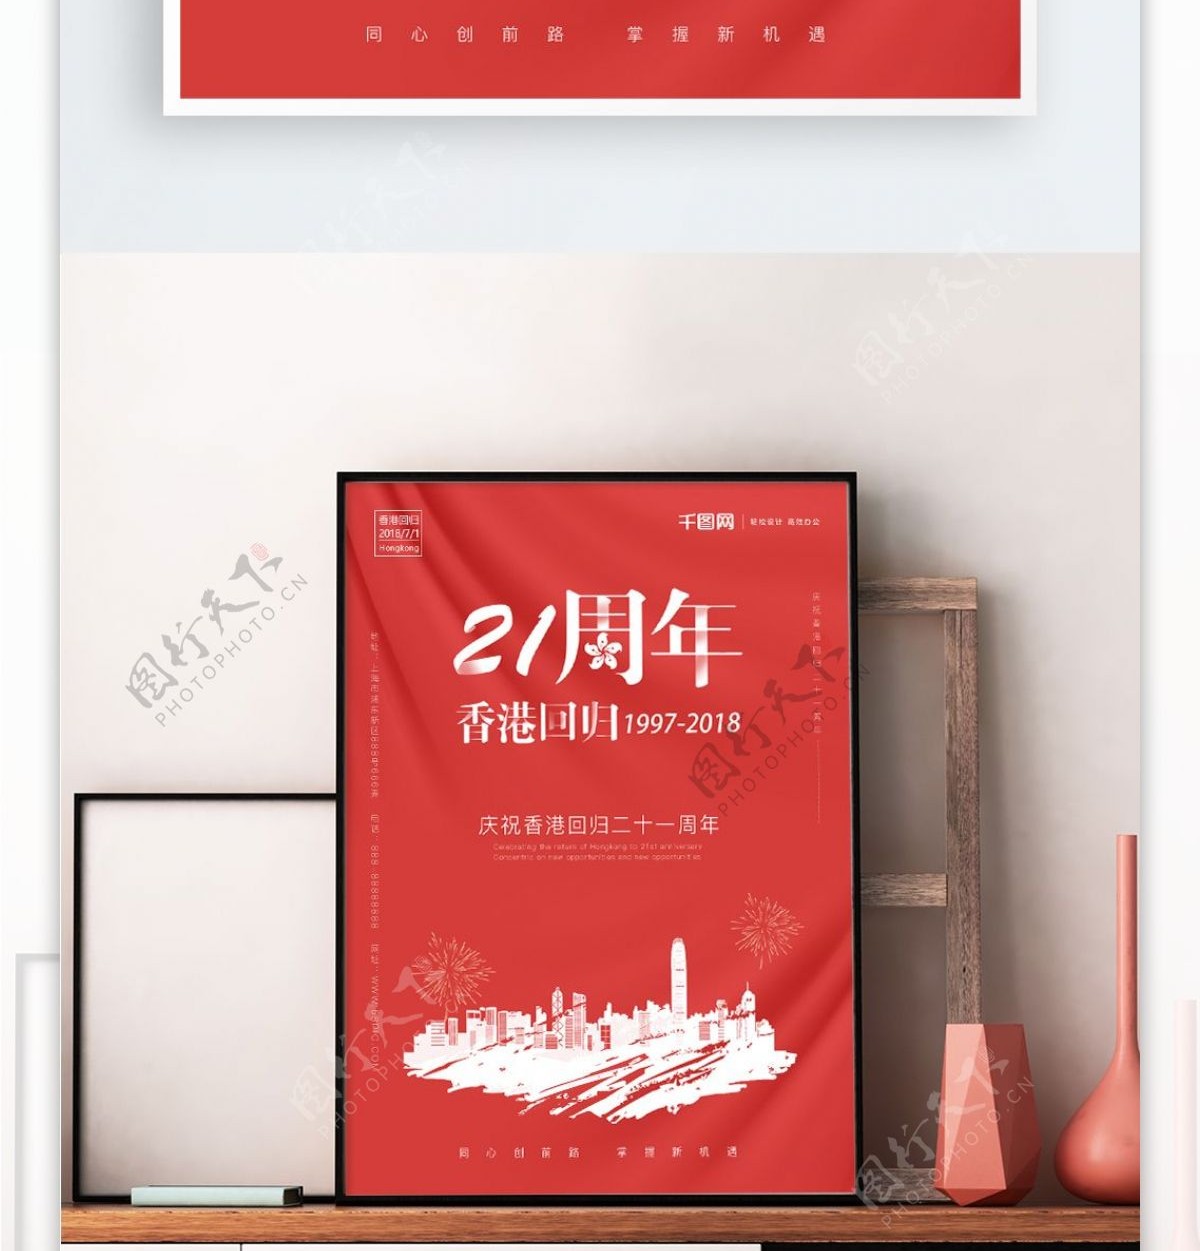 红色喜庆香港回归日节日海报设计